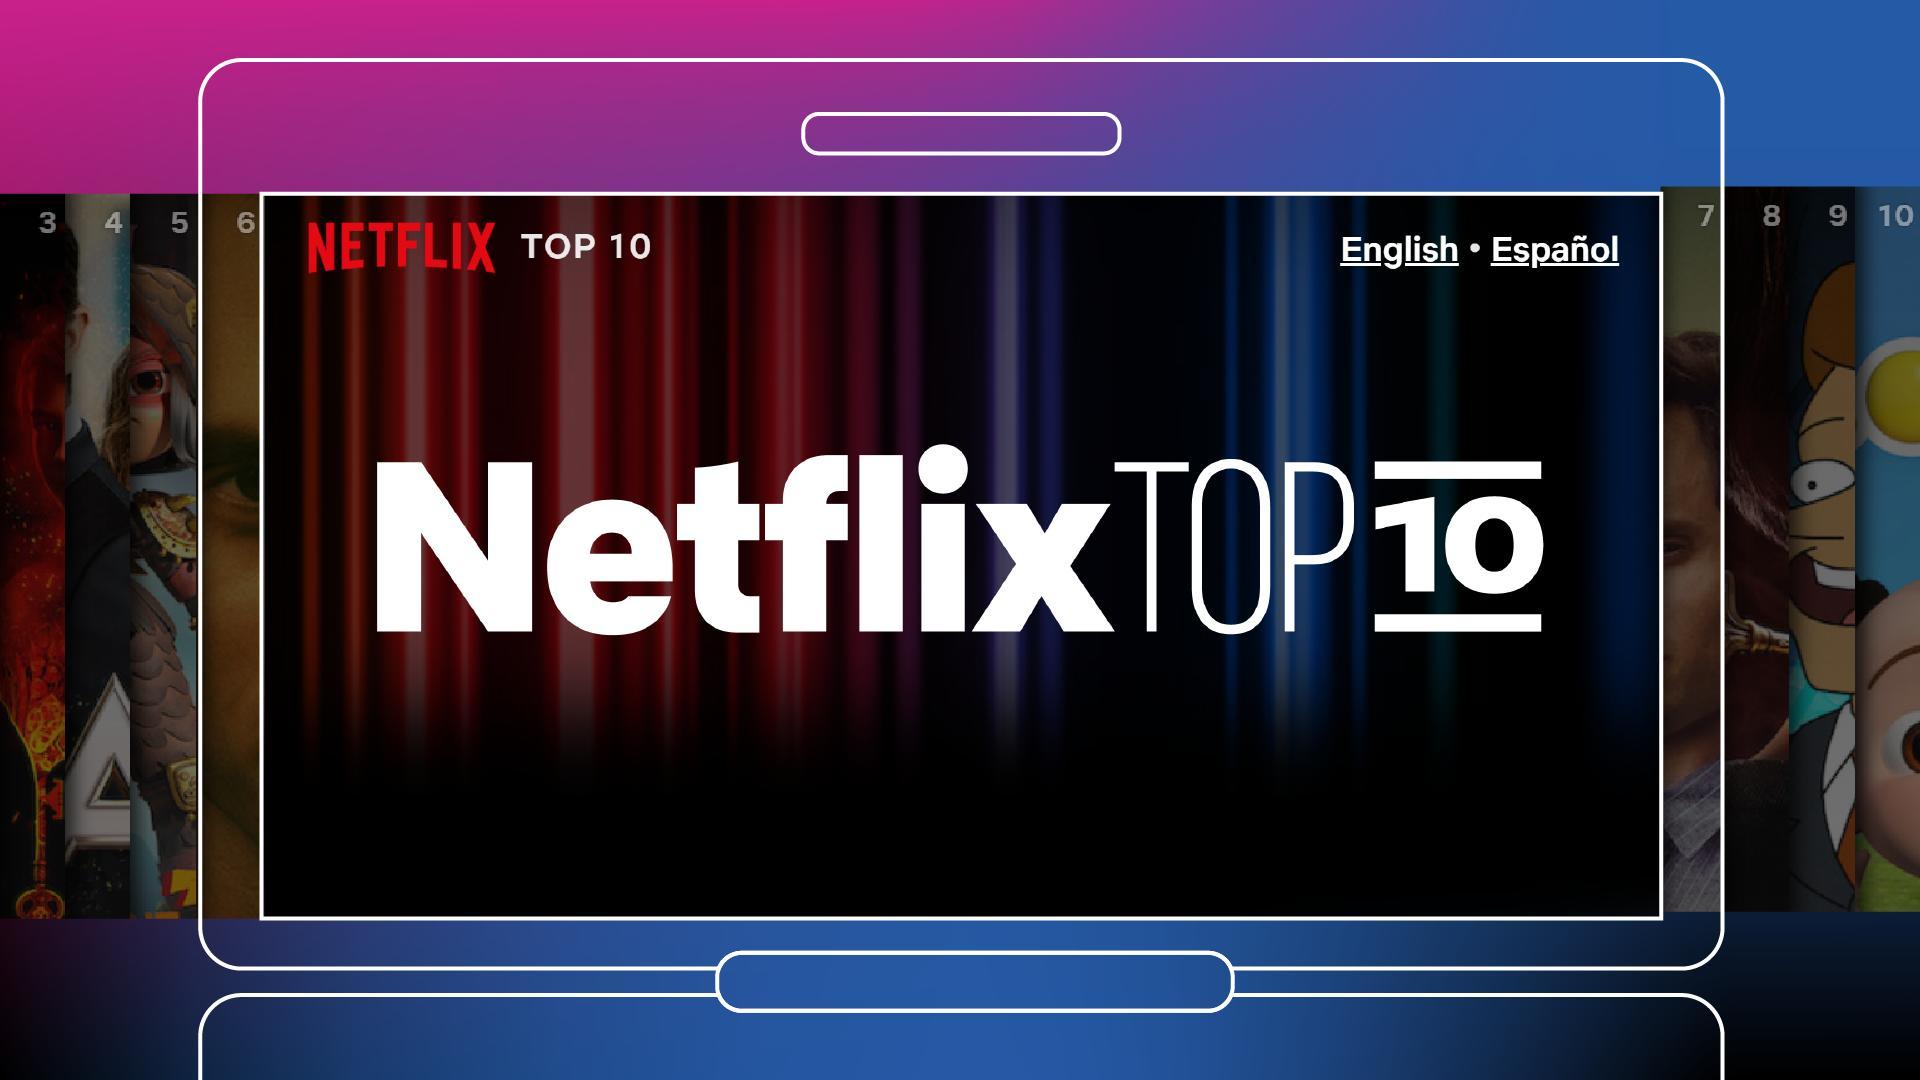 Top 10 Series Y Peliculas Netflix Mas Vistas Esta Semana 2022